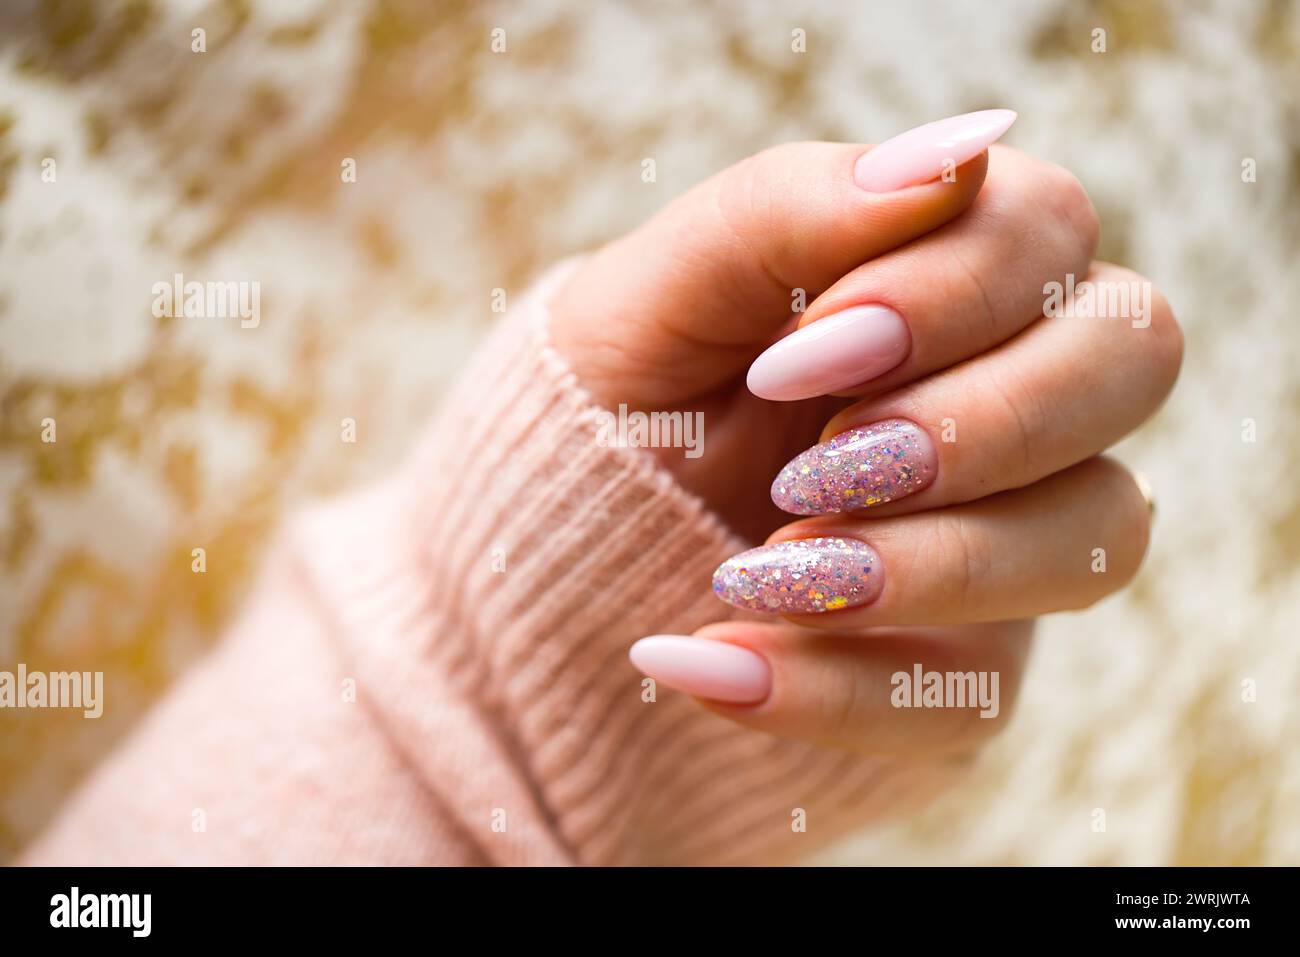 Une image représentant une main de femme avec de superbes ongles en gel rose, méticuleusement peints et ornés de paillettes multicolores élégantes. La main est bien-M. Banque D'Images